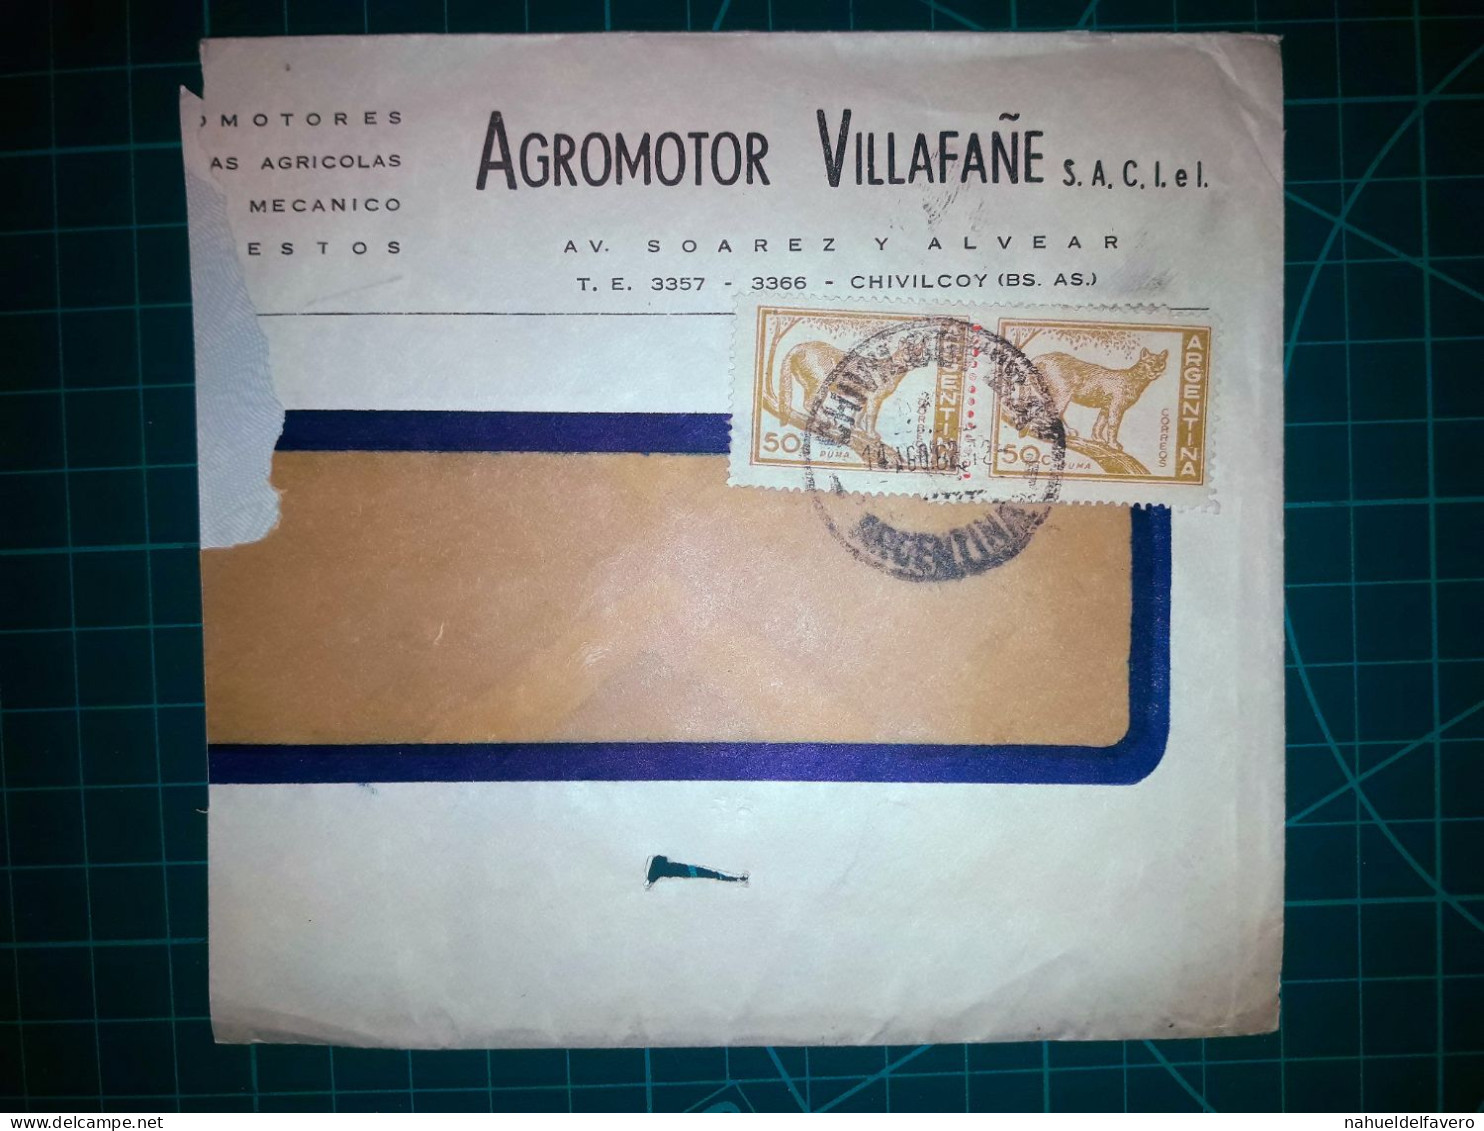 ARGENTINE, Enveloppe Appartenant à "AGROMOTOR VILLAFAÑE S.A.C.I.eL." Il Circule Avec Une Variété Colorée De Timbres-post - Used Stamps